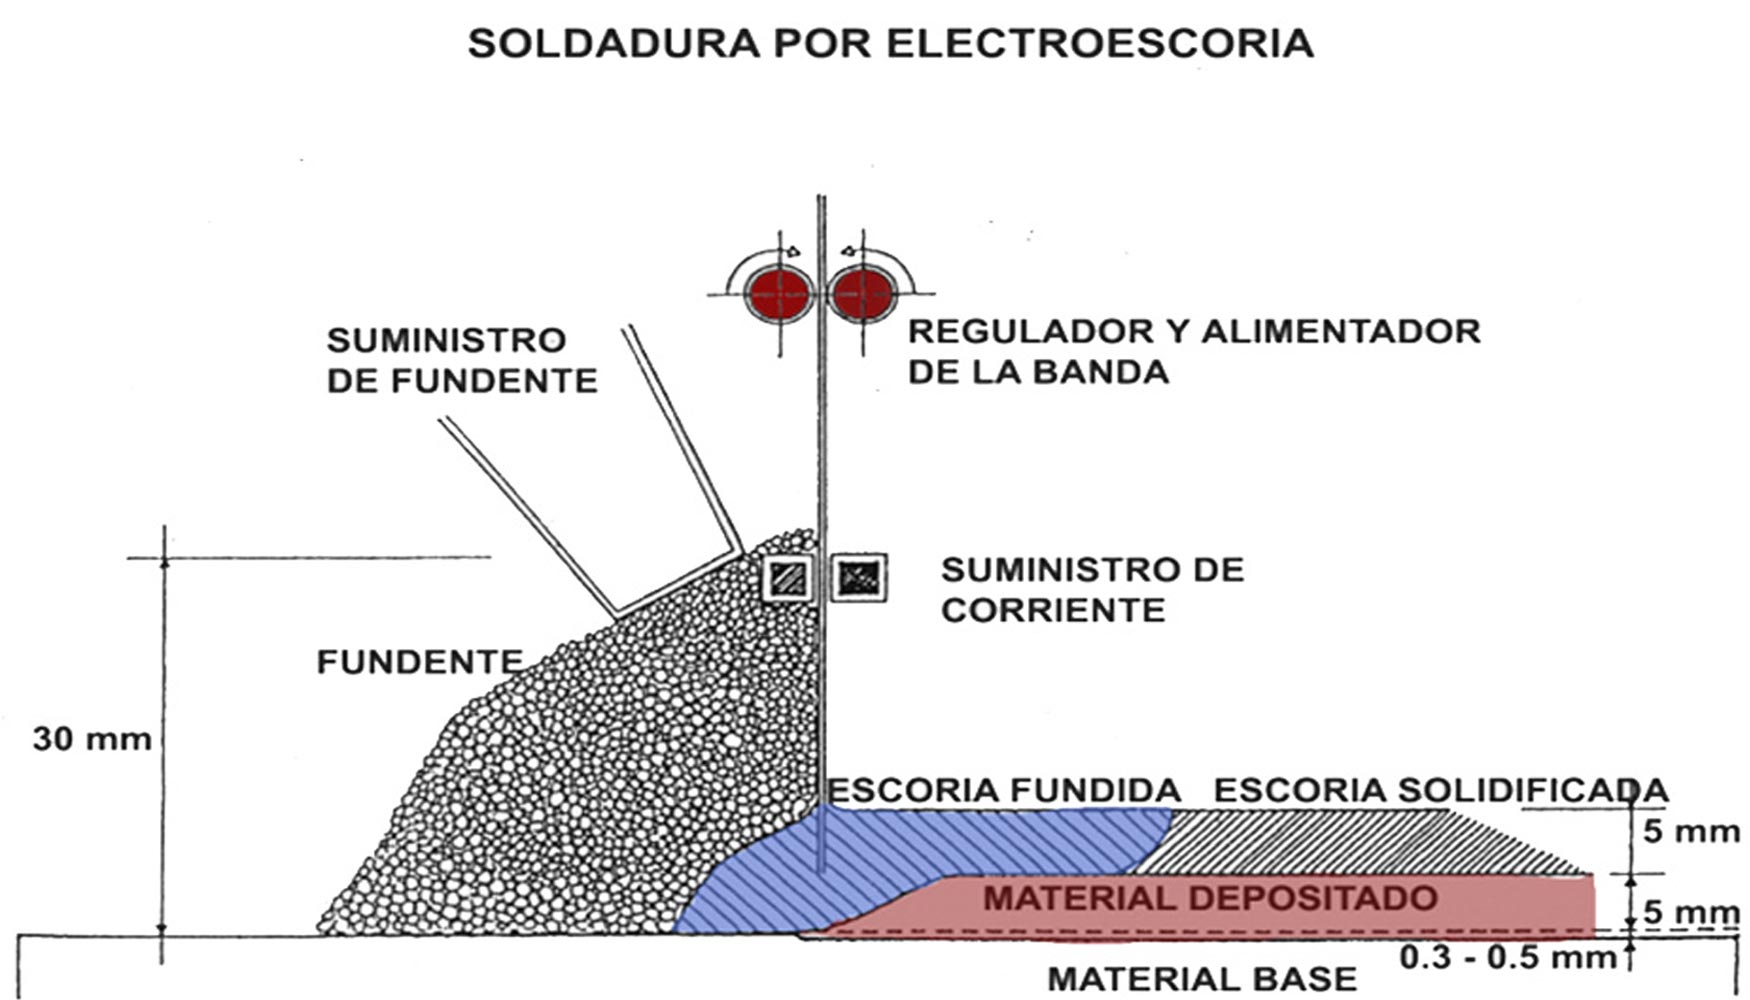 Figura 3. Esquema del proceso de electroescoria